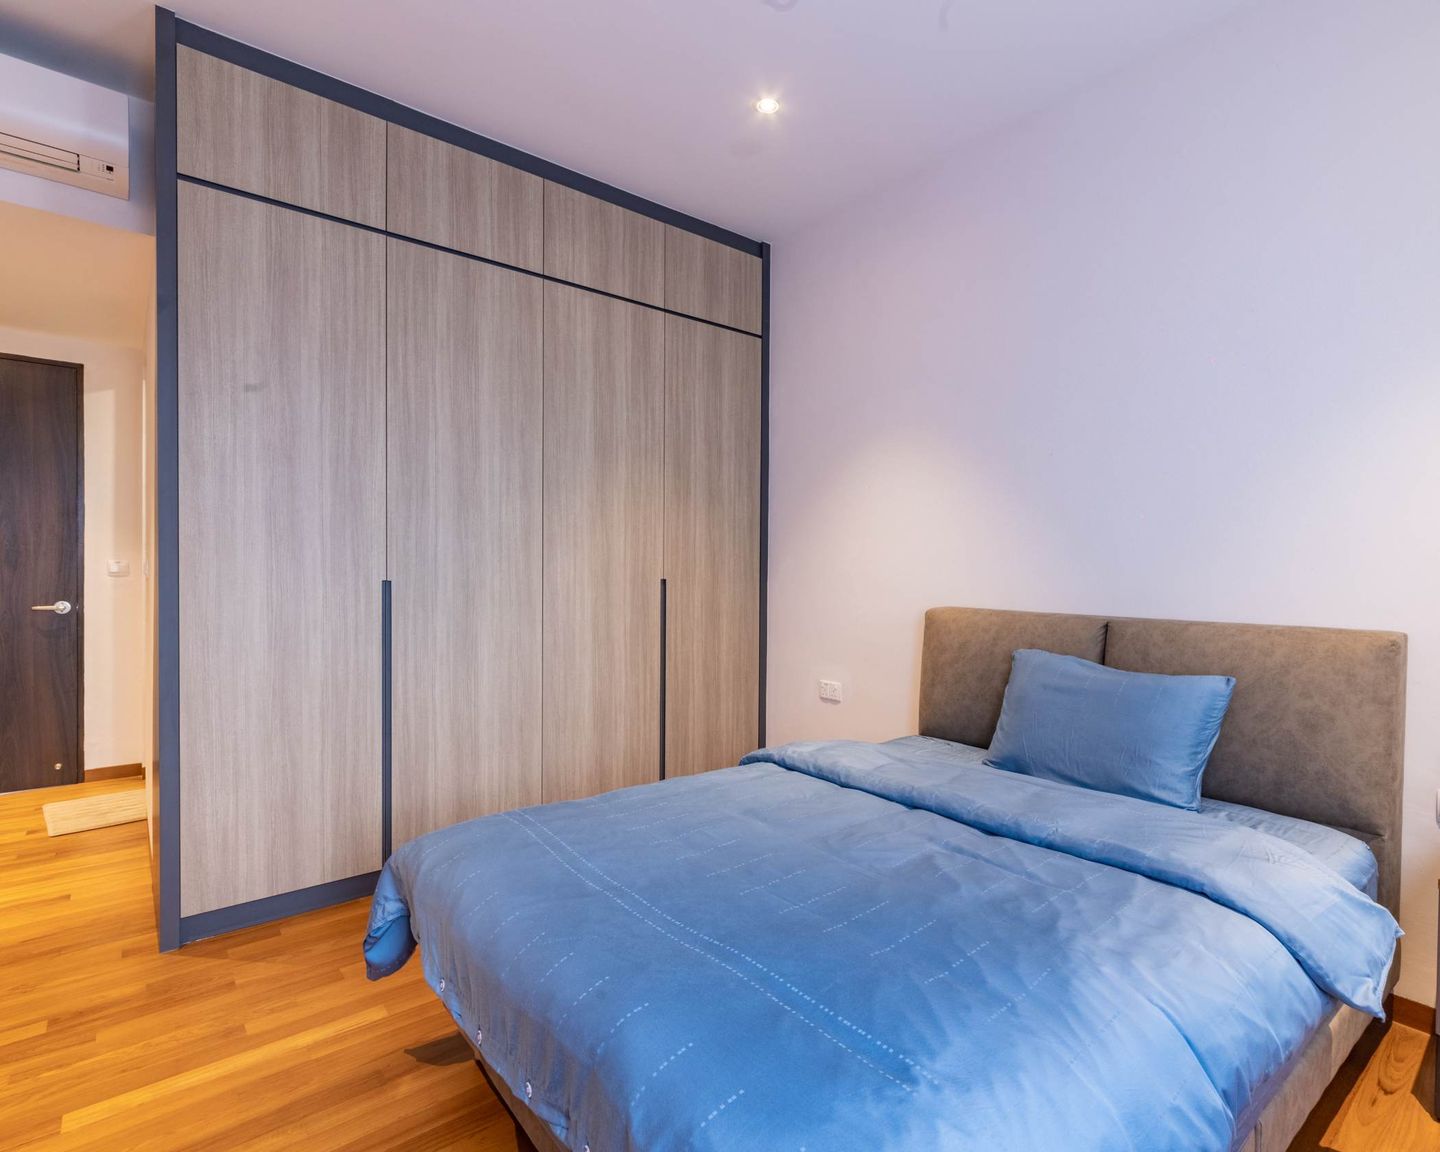 Modern Laminate Design For Bedroom Storage - Livspace